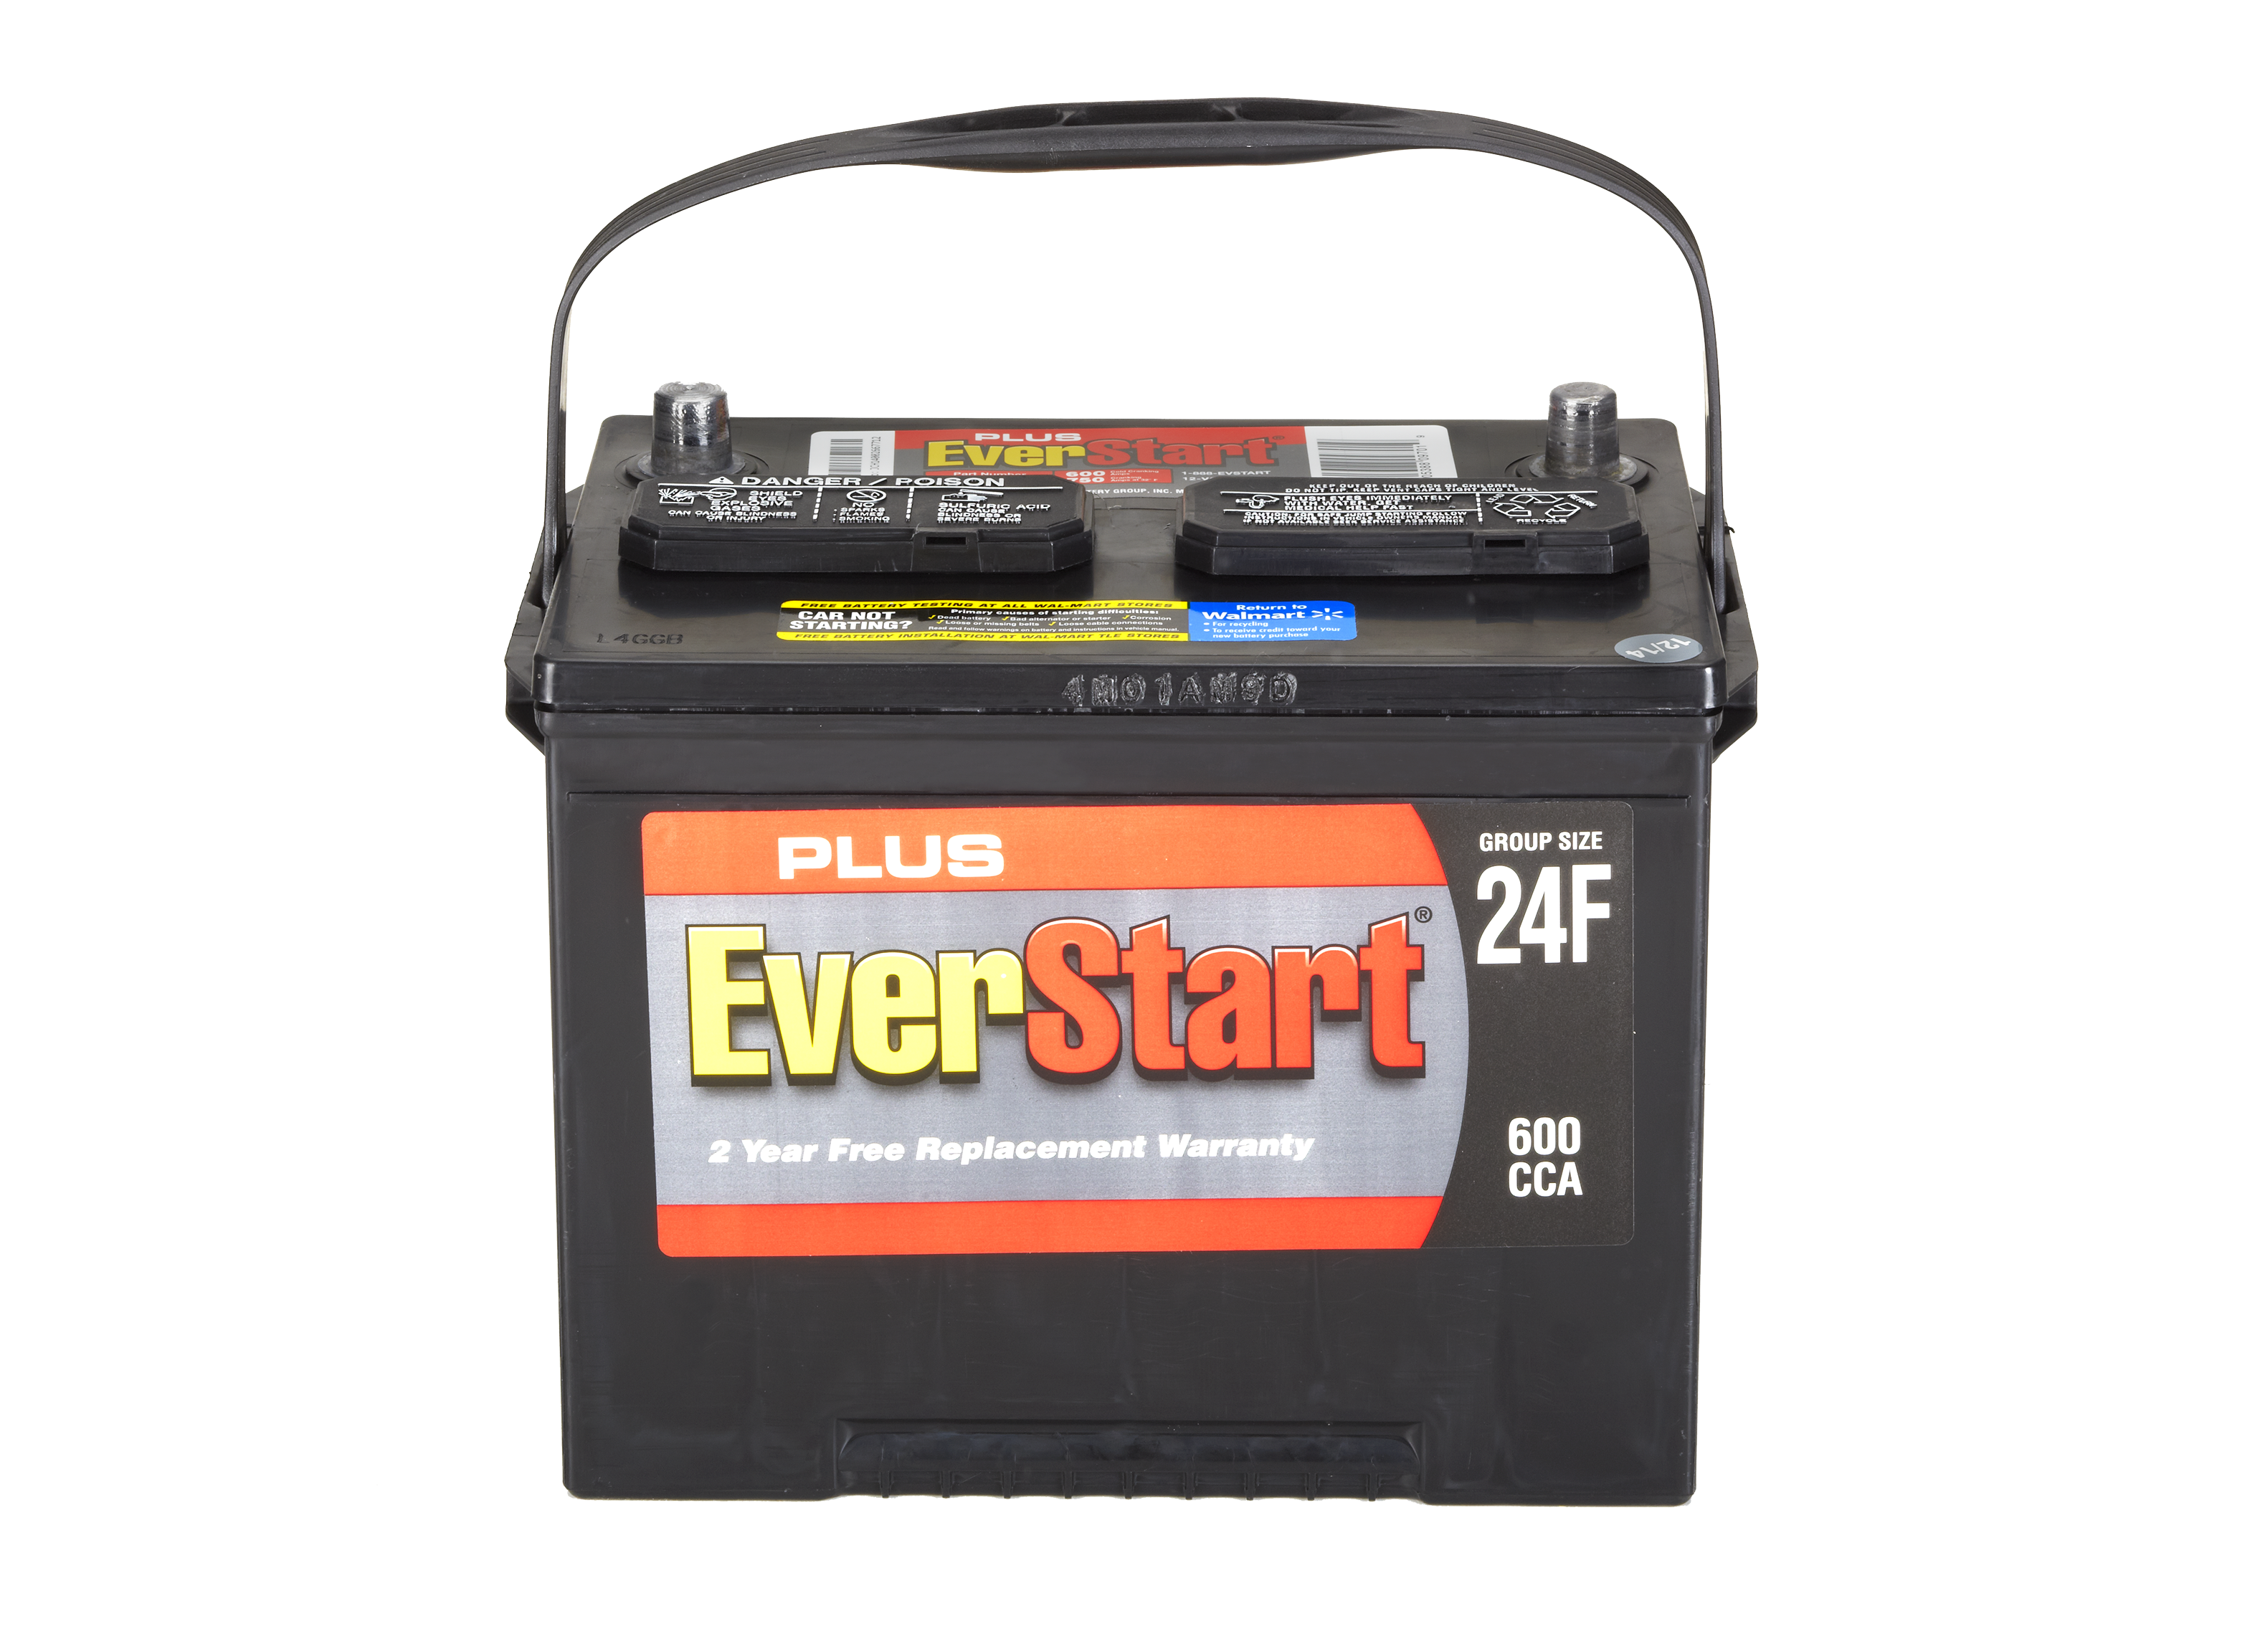 F battery. Everstart Maxx аккумулятор. MRD lx1f Battery. A015f Battery. Uplus Battery.